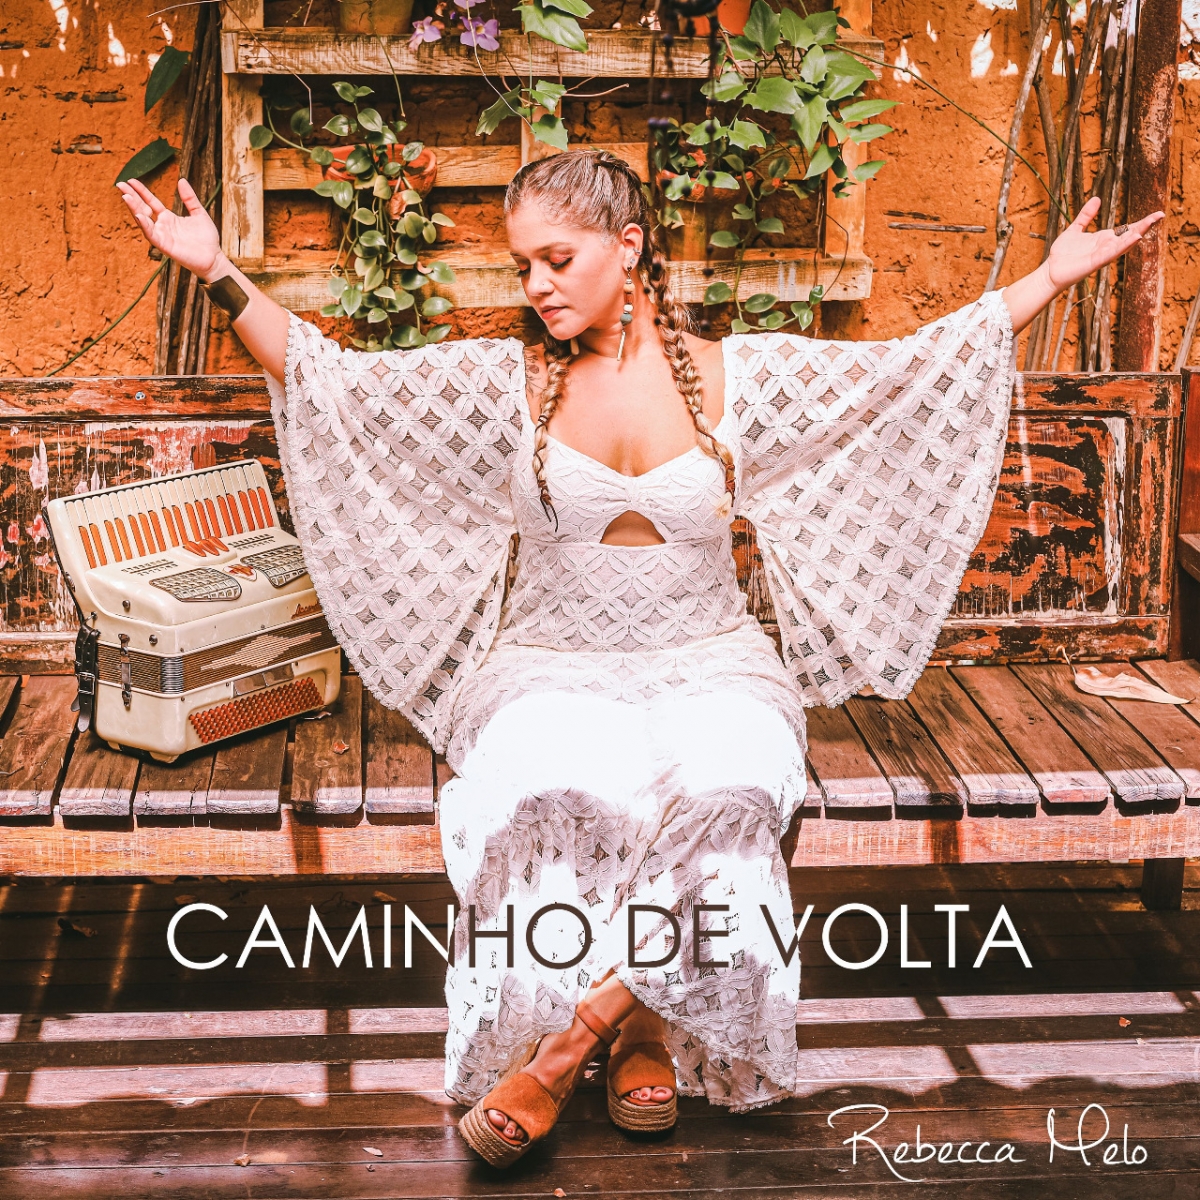 Rebecca Melo lança novo álbum nesta sexta e celebra com show no Vila Izaura - Foto: Pritty Reis | Divulgação